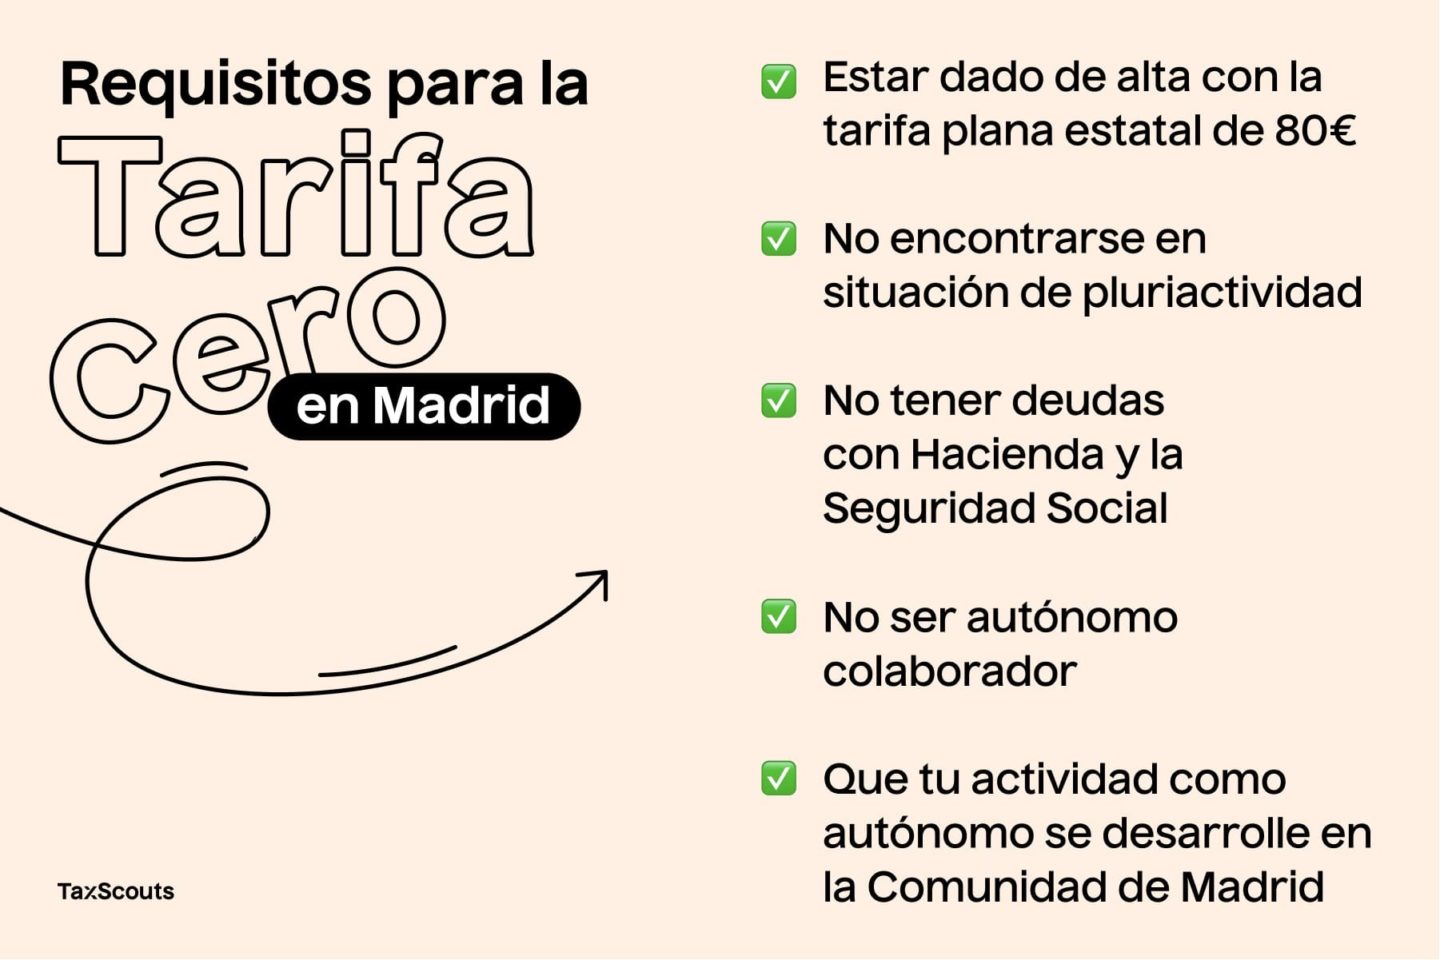 Requisitos para la tarifa cero en Madrid